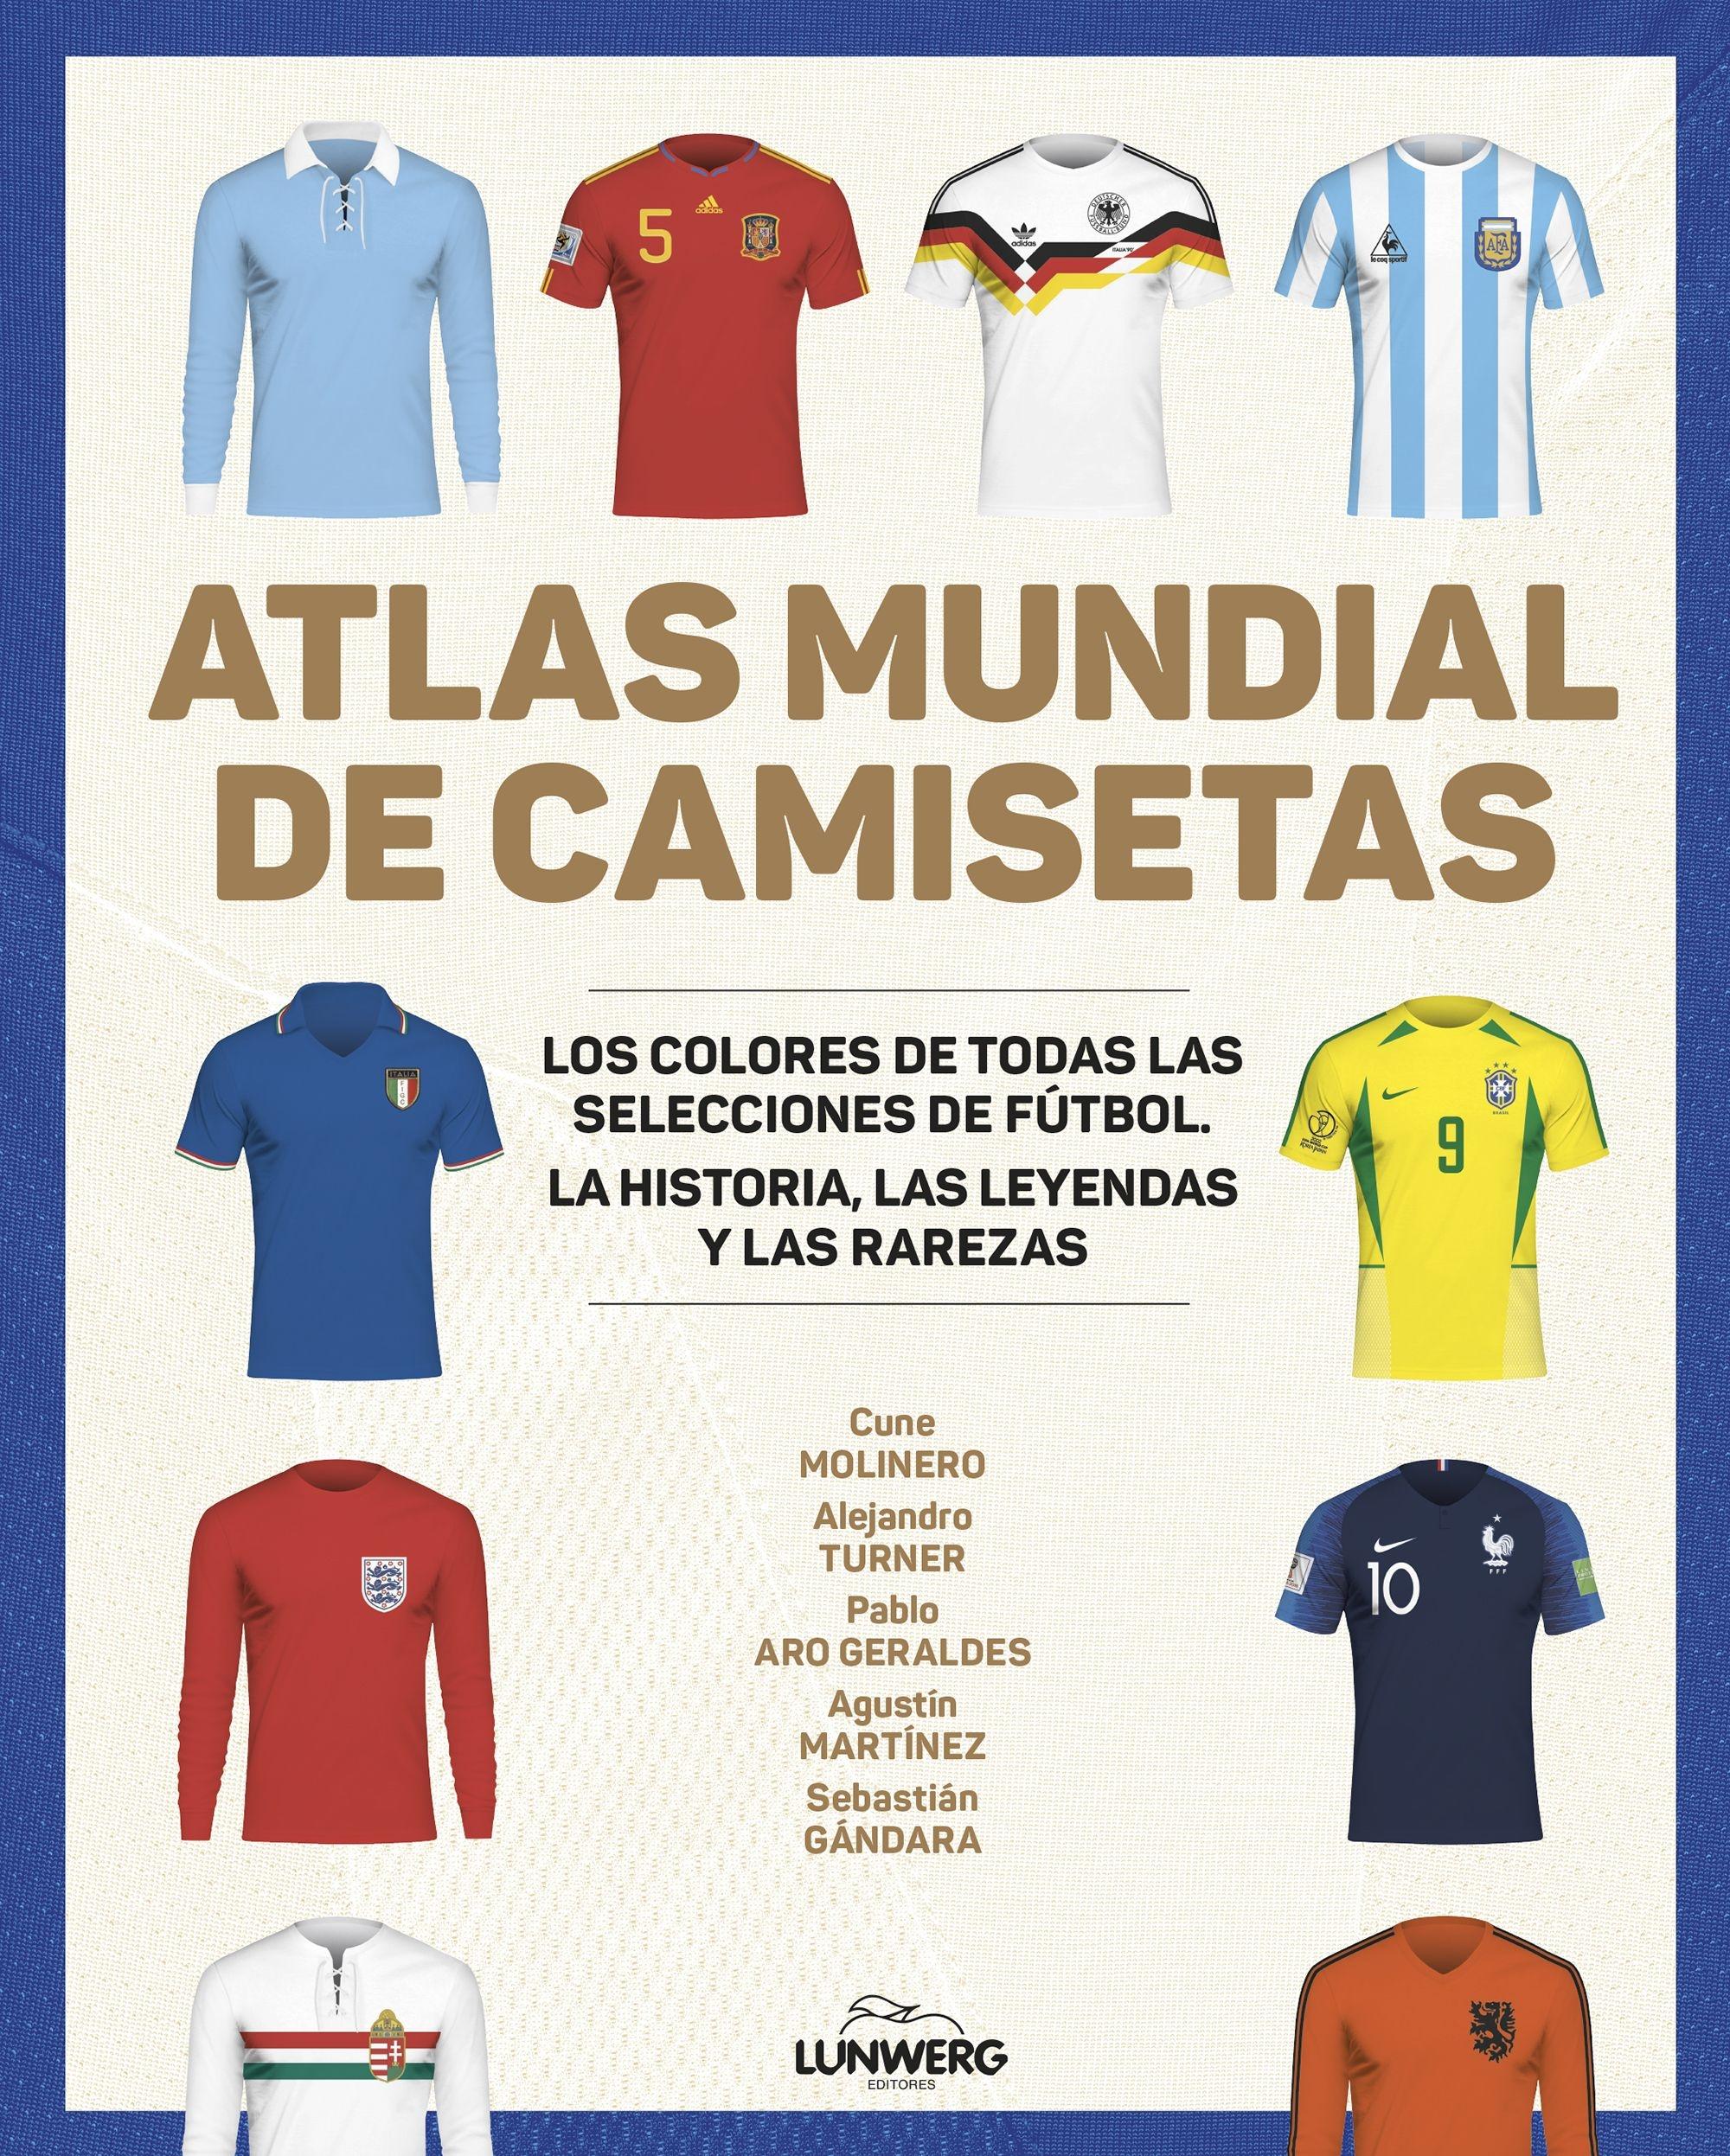 Atlas Mundial de Camisetas "Los Colores de Todas las Selecciones de Fútbol". 